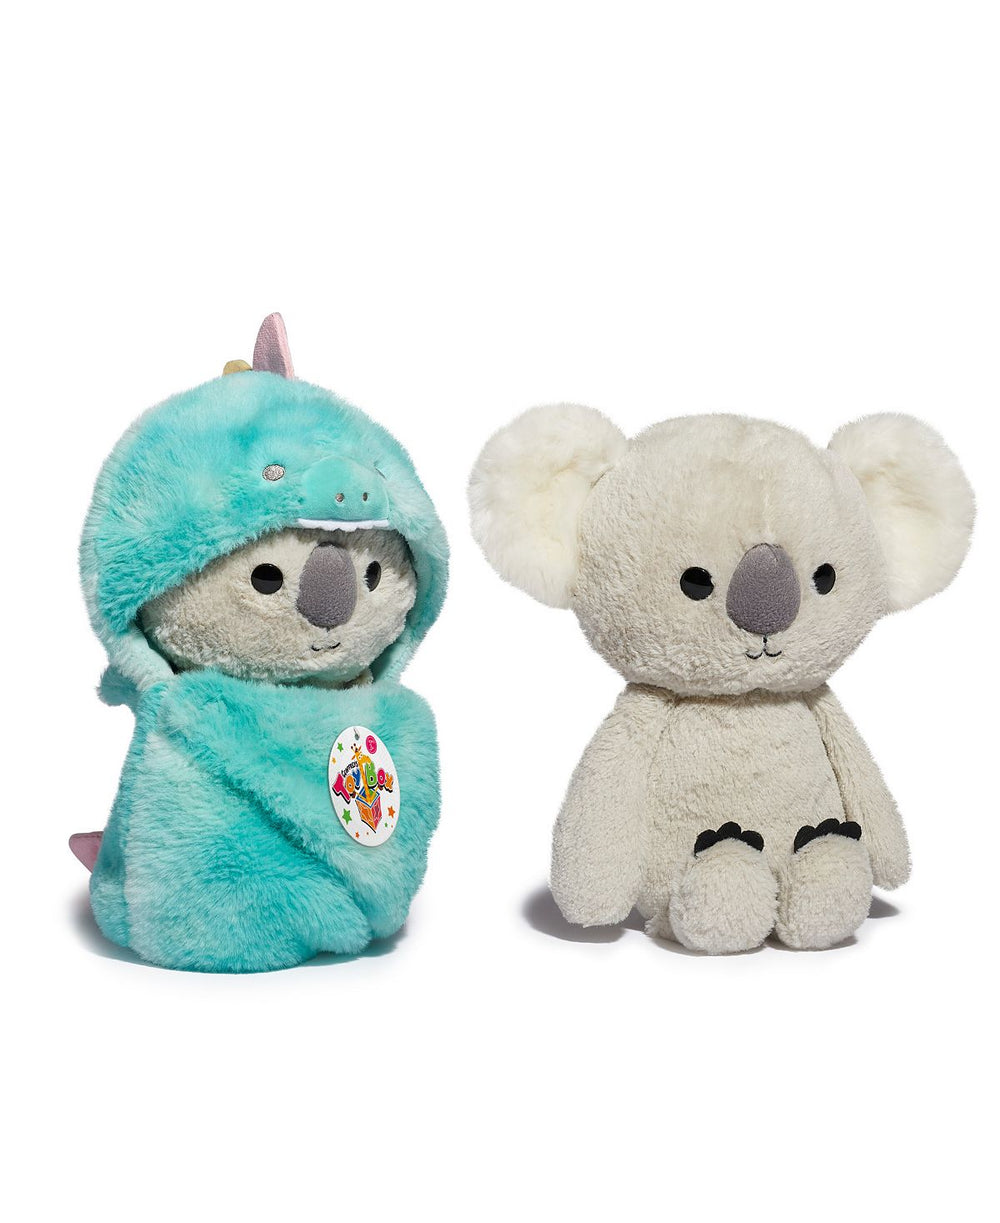 Geoffrey's Toy Box 10 inch Cozie Friends Koala Dragon Plush - Exclusive